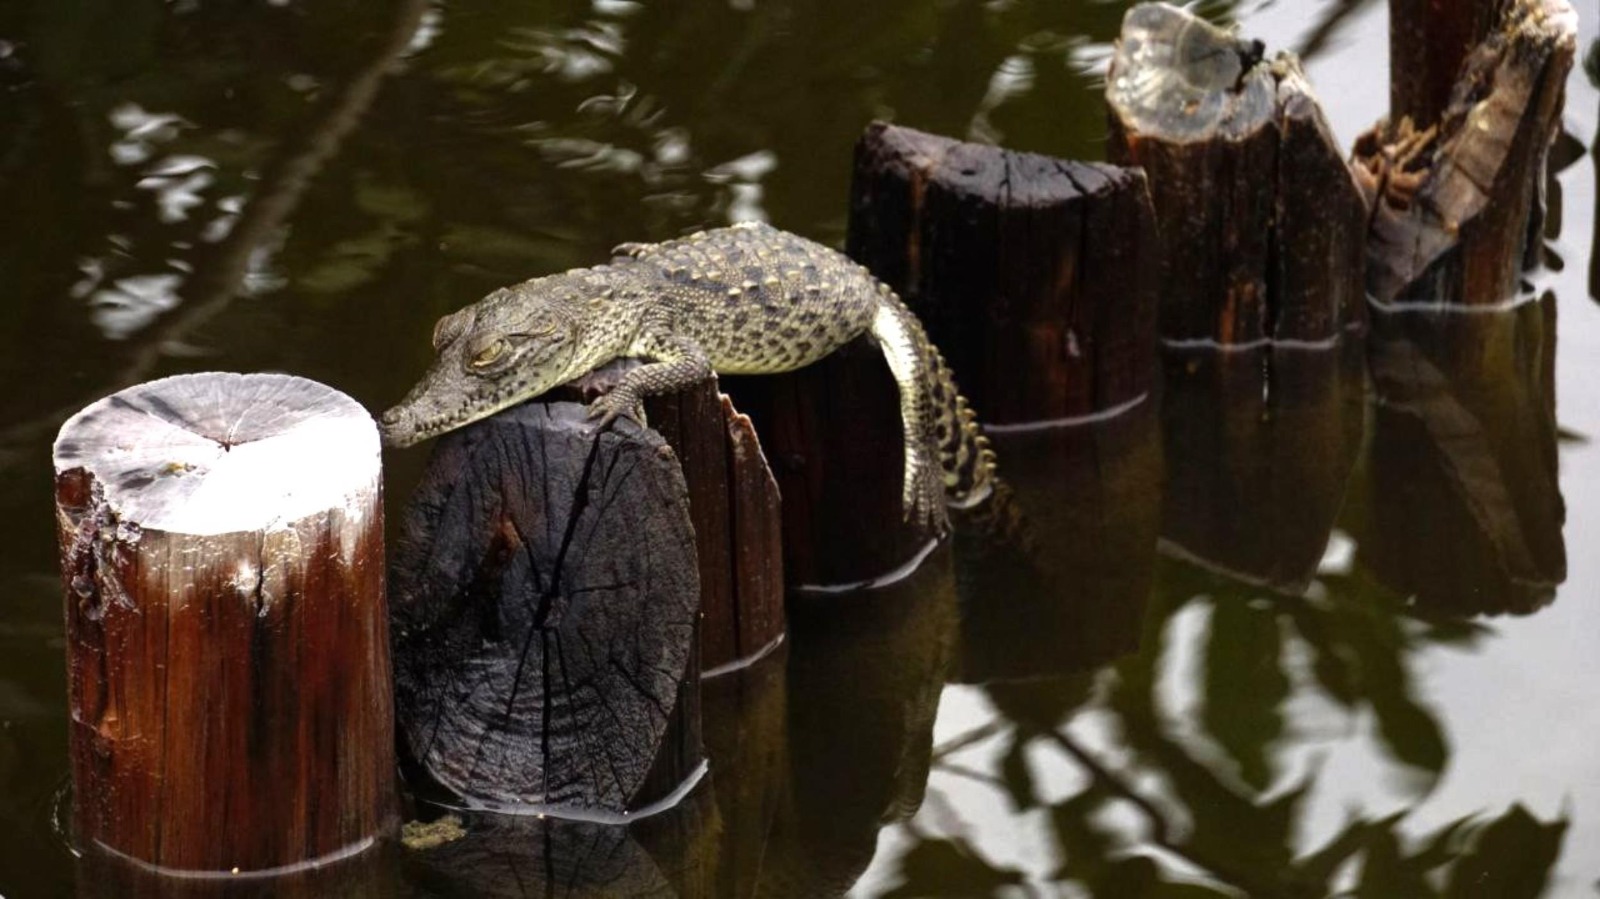 La FPMC dio a conocer que recientemente registró la cría de un cocodrilo americano (Crocodrylus acutus) en el Parque Ecoturístico Punta Sur